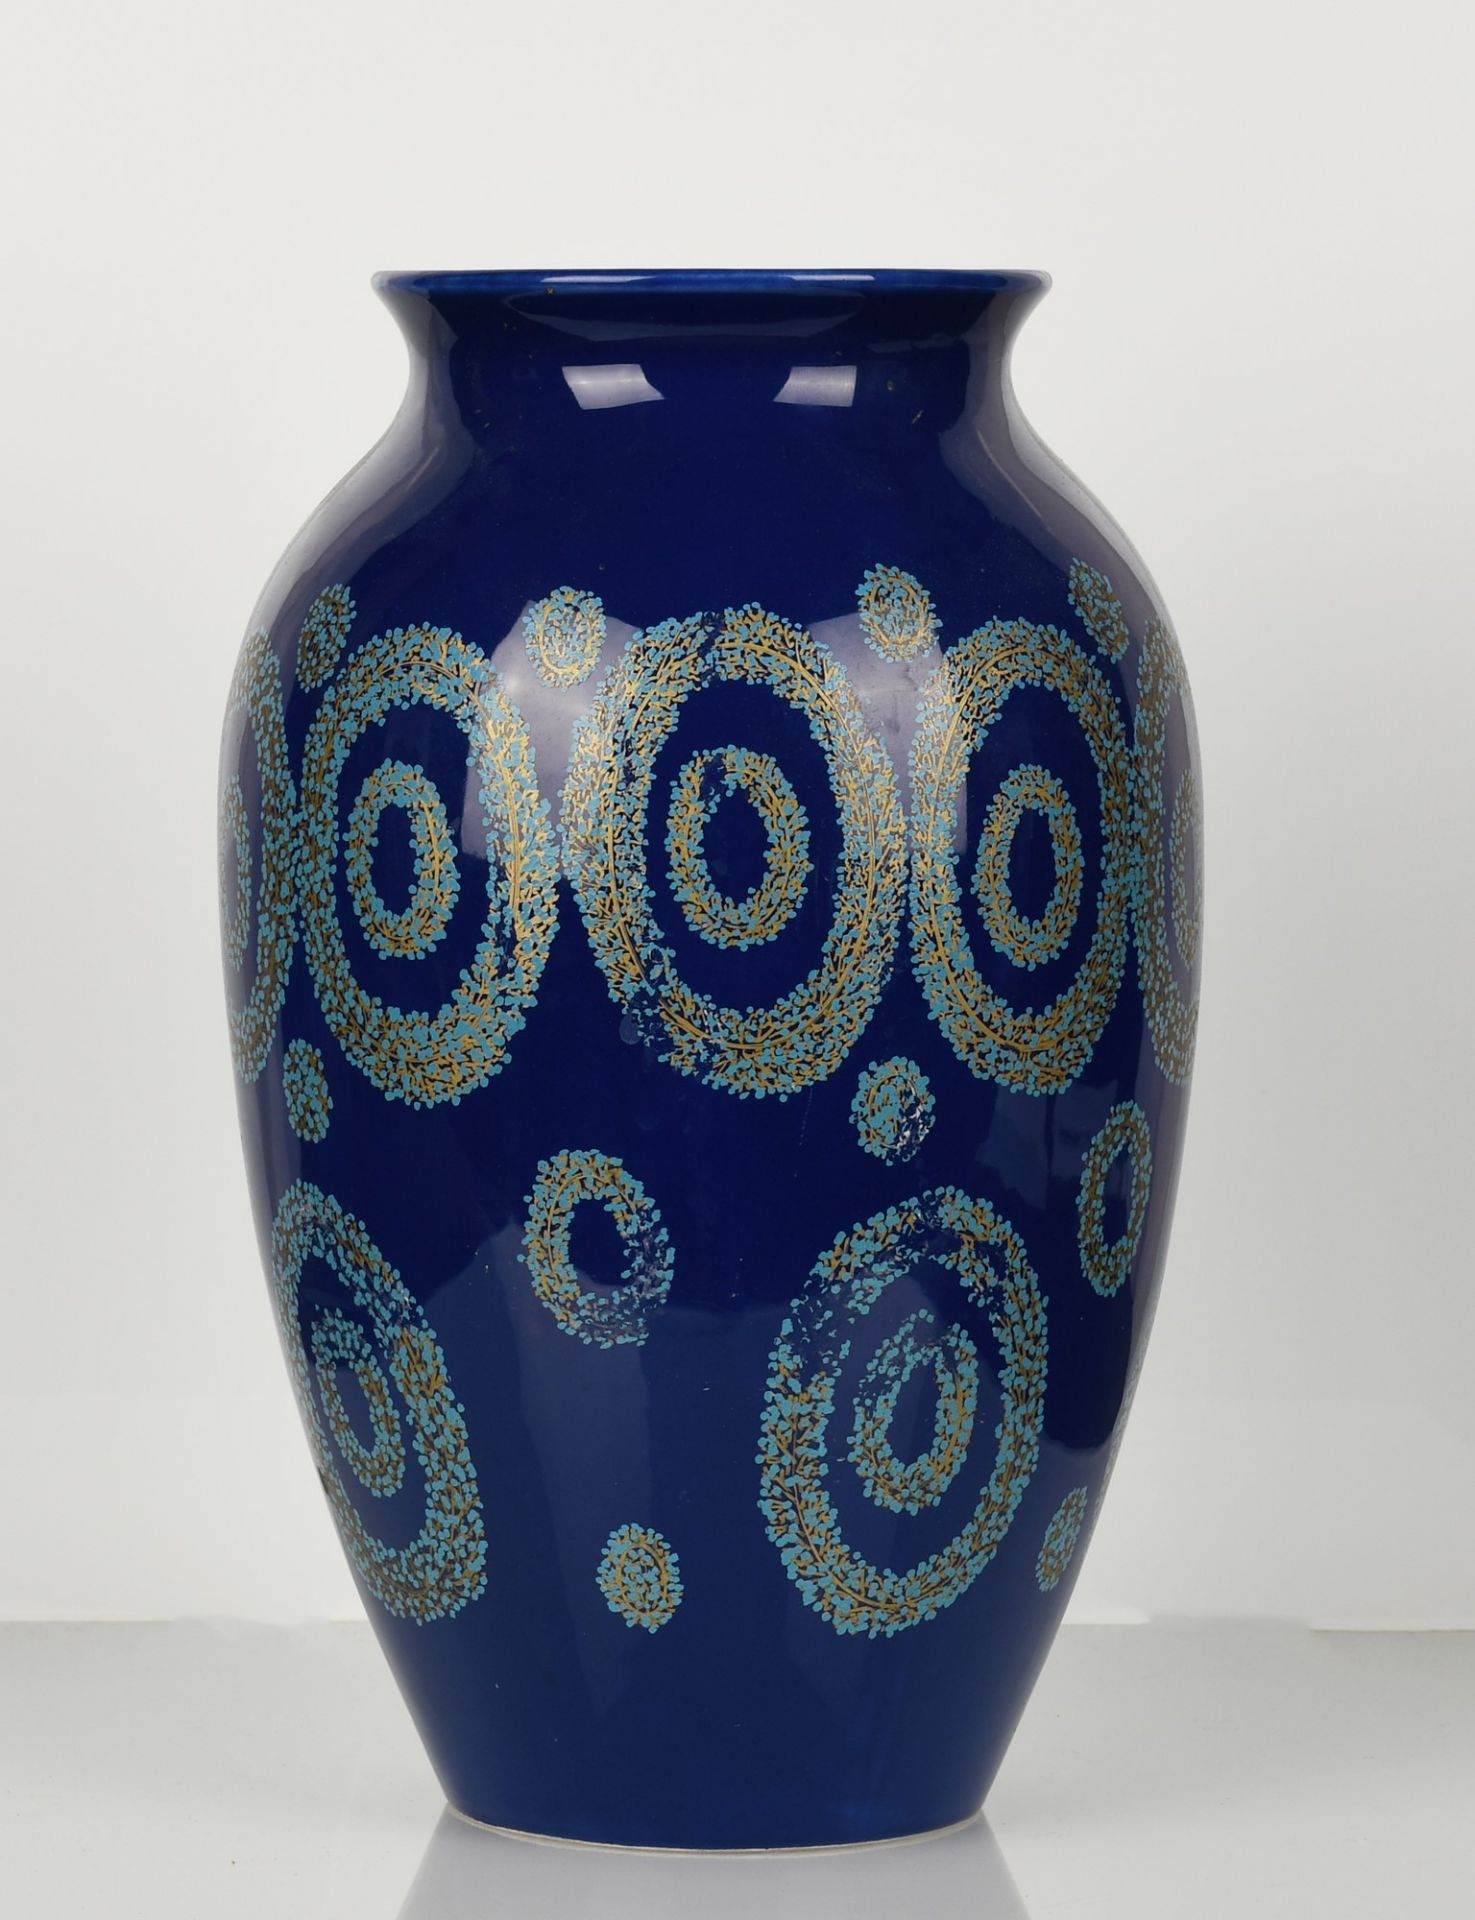 Vaso in ceramica blu con particolari decori celesti e lumeggiature in oro - Image 2 of 3